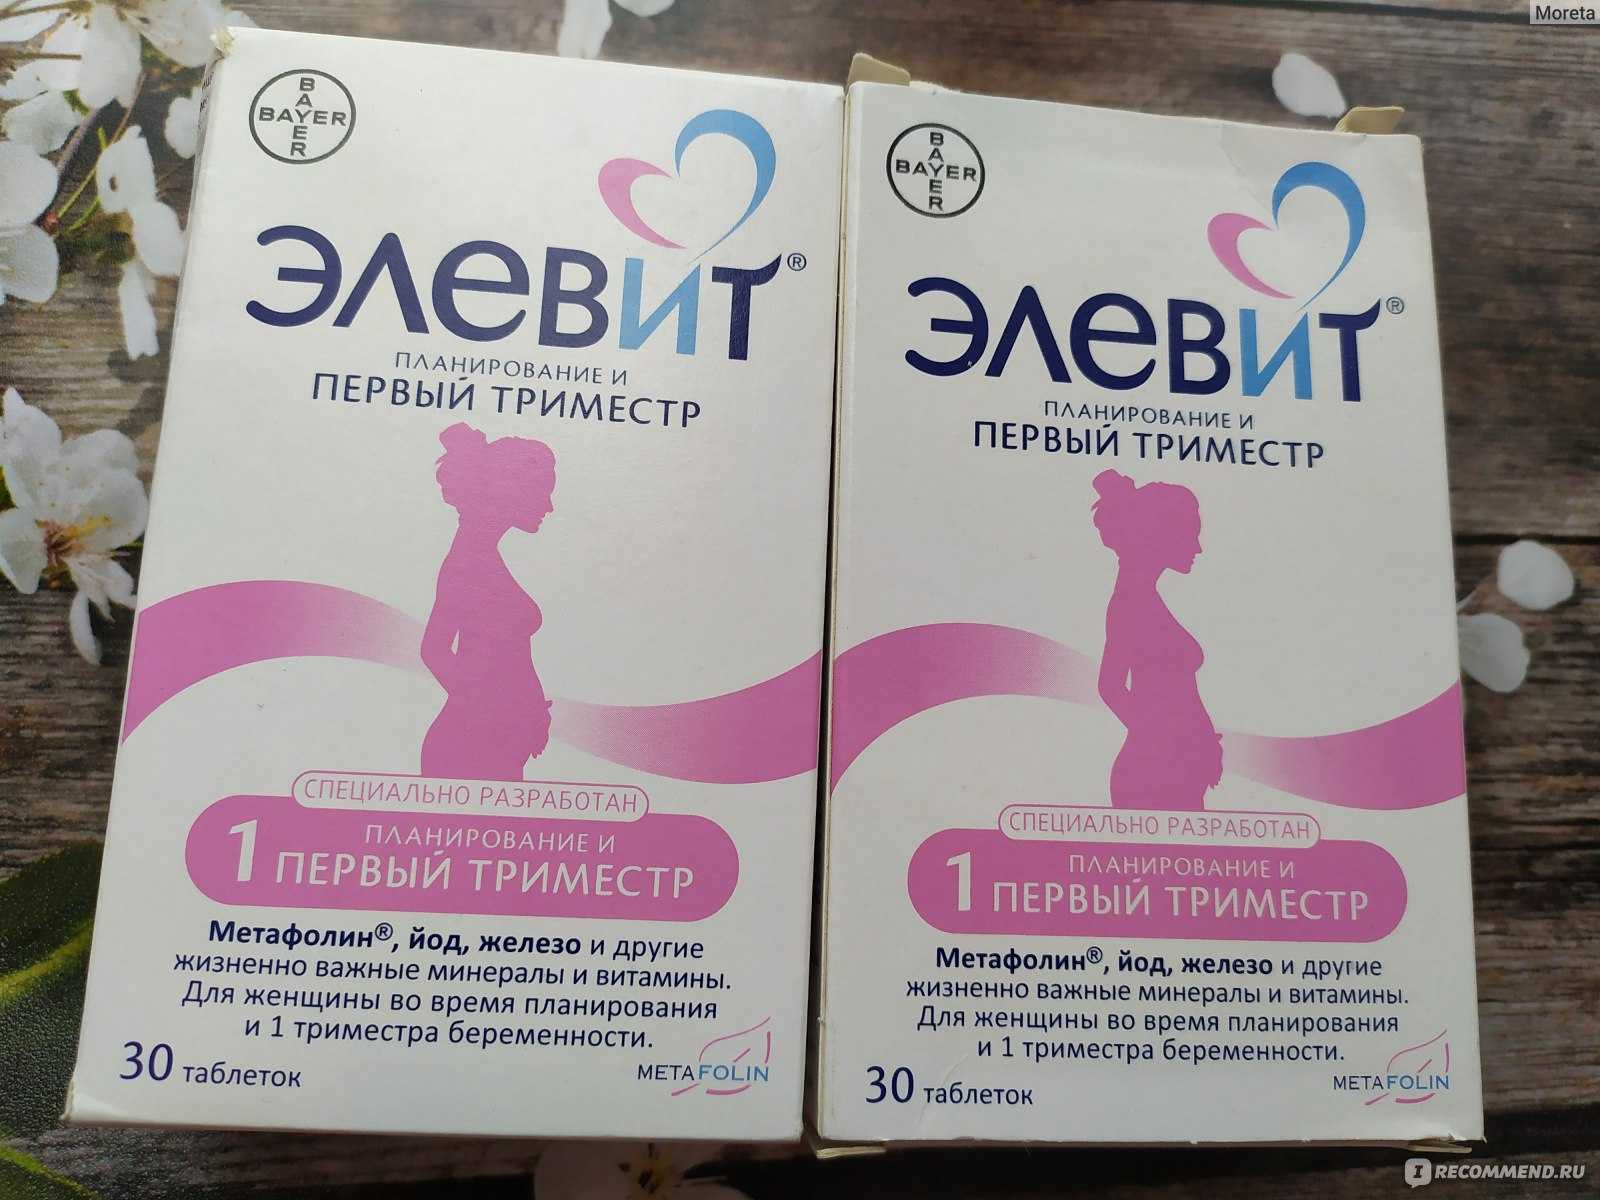 Элевит пронаталь для беременных: состав витаминов, инструкция по применению в 1, 2, 3 триместре, отзывы